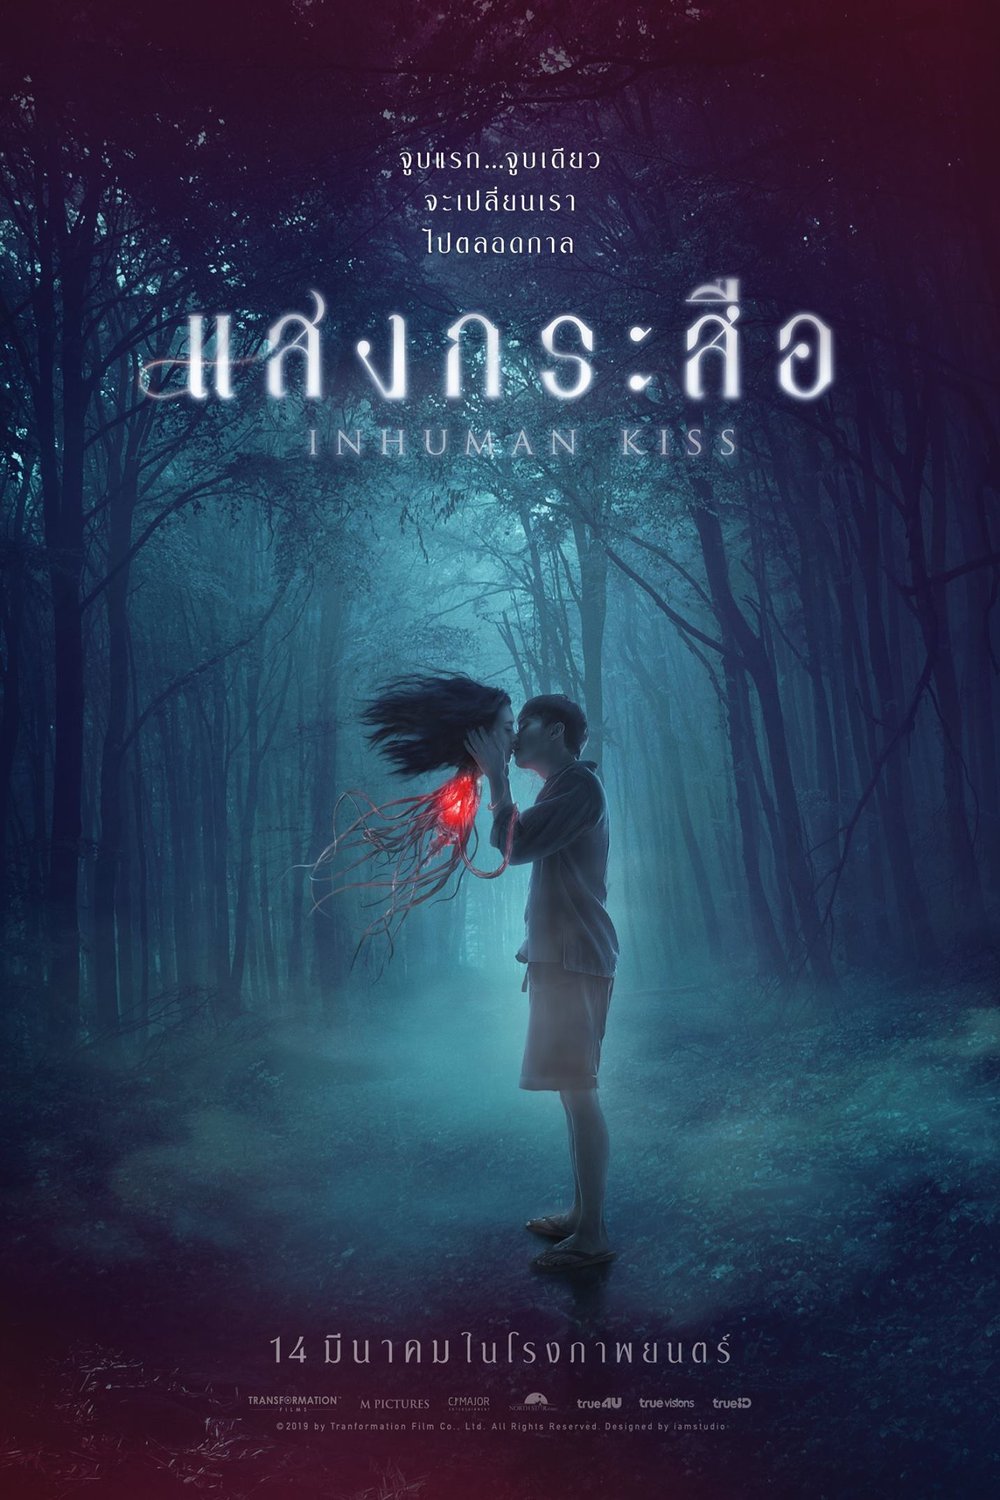 L'affiche originale du film Inhuman Kiss en Thaïlandais